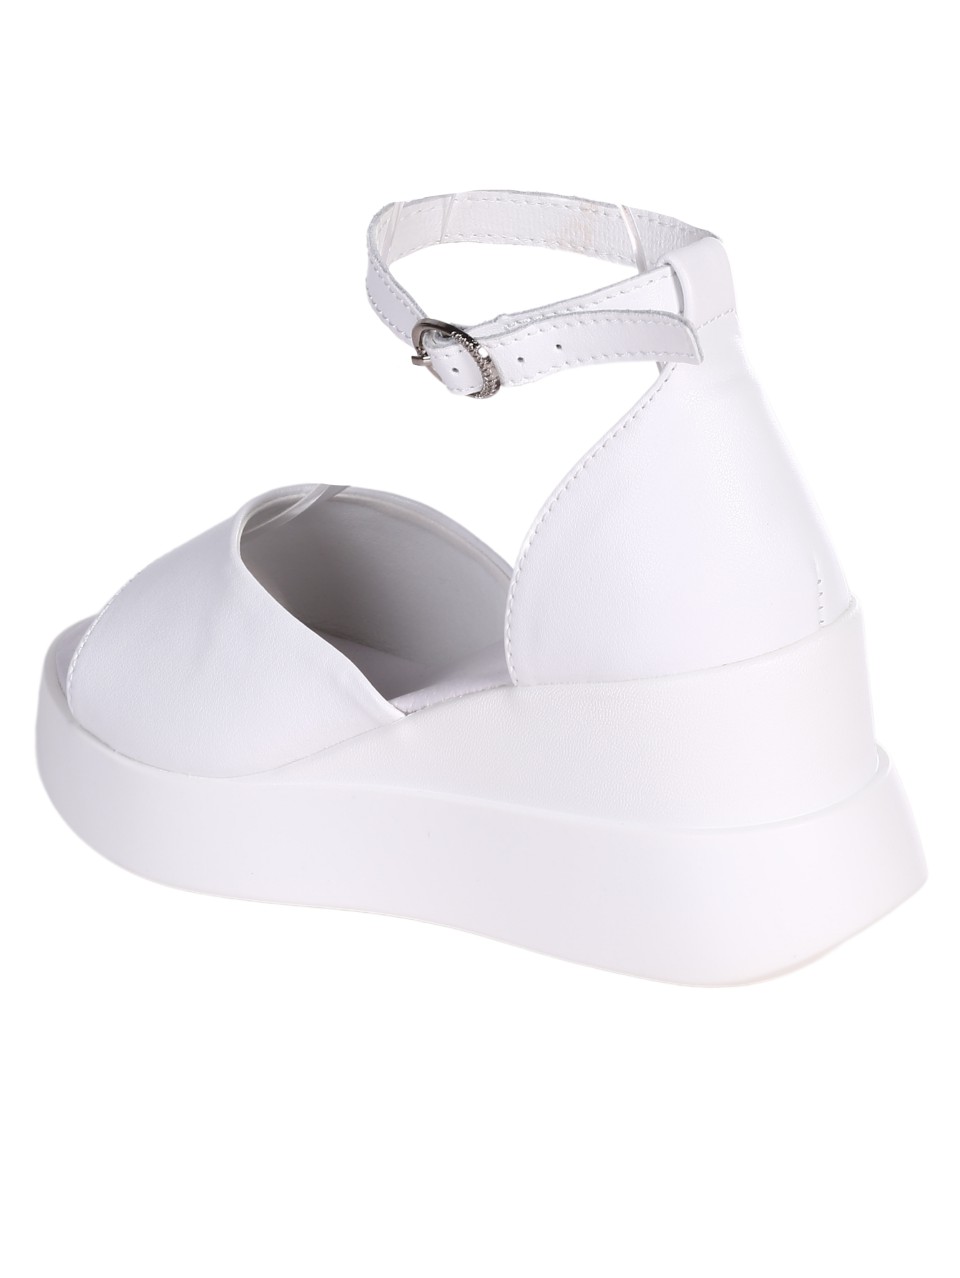 Ежедневни дамски сандал от естествена кожа в бяло 4AF-24163 white